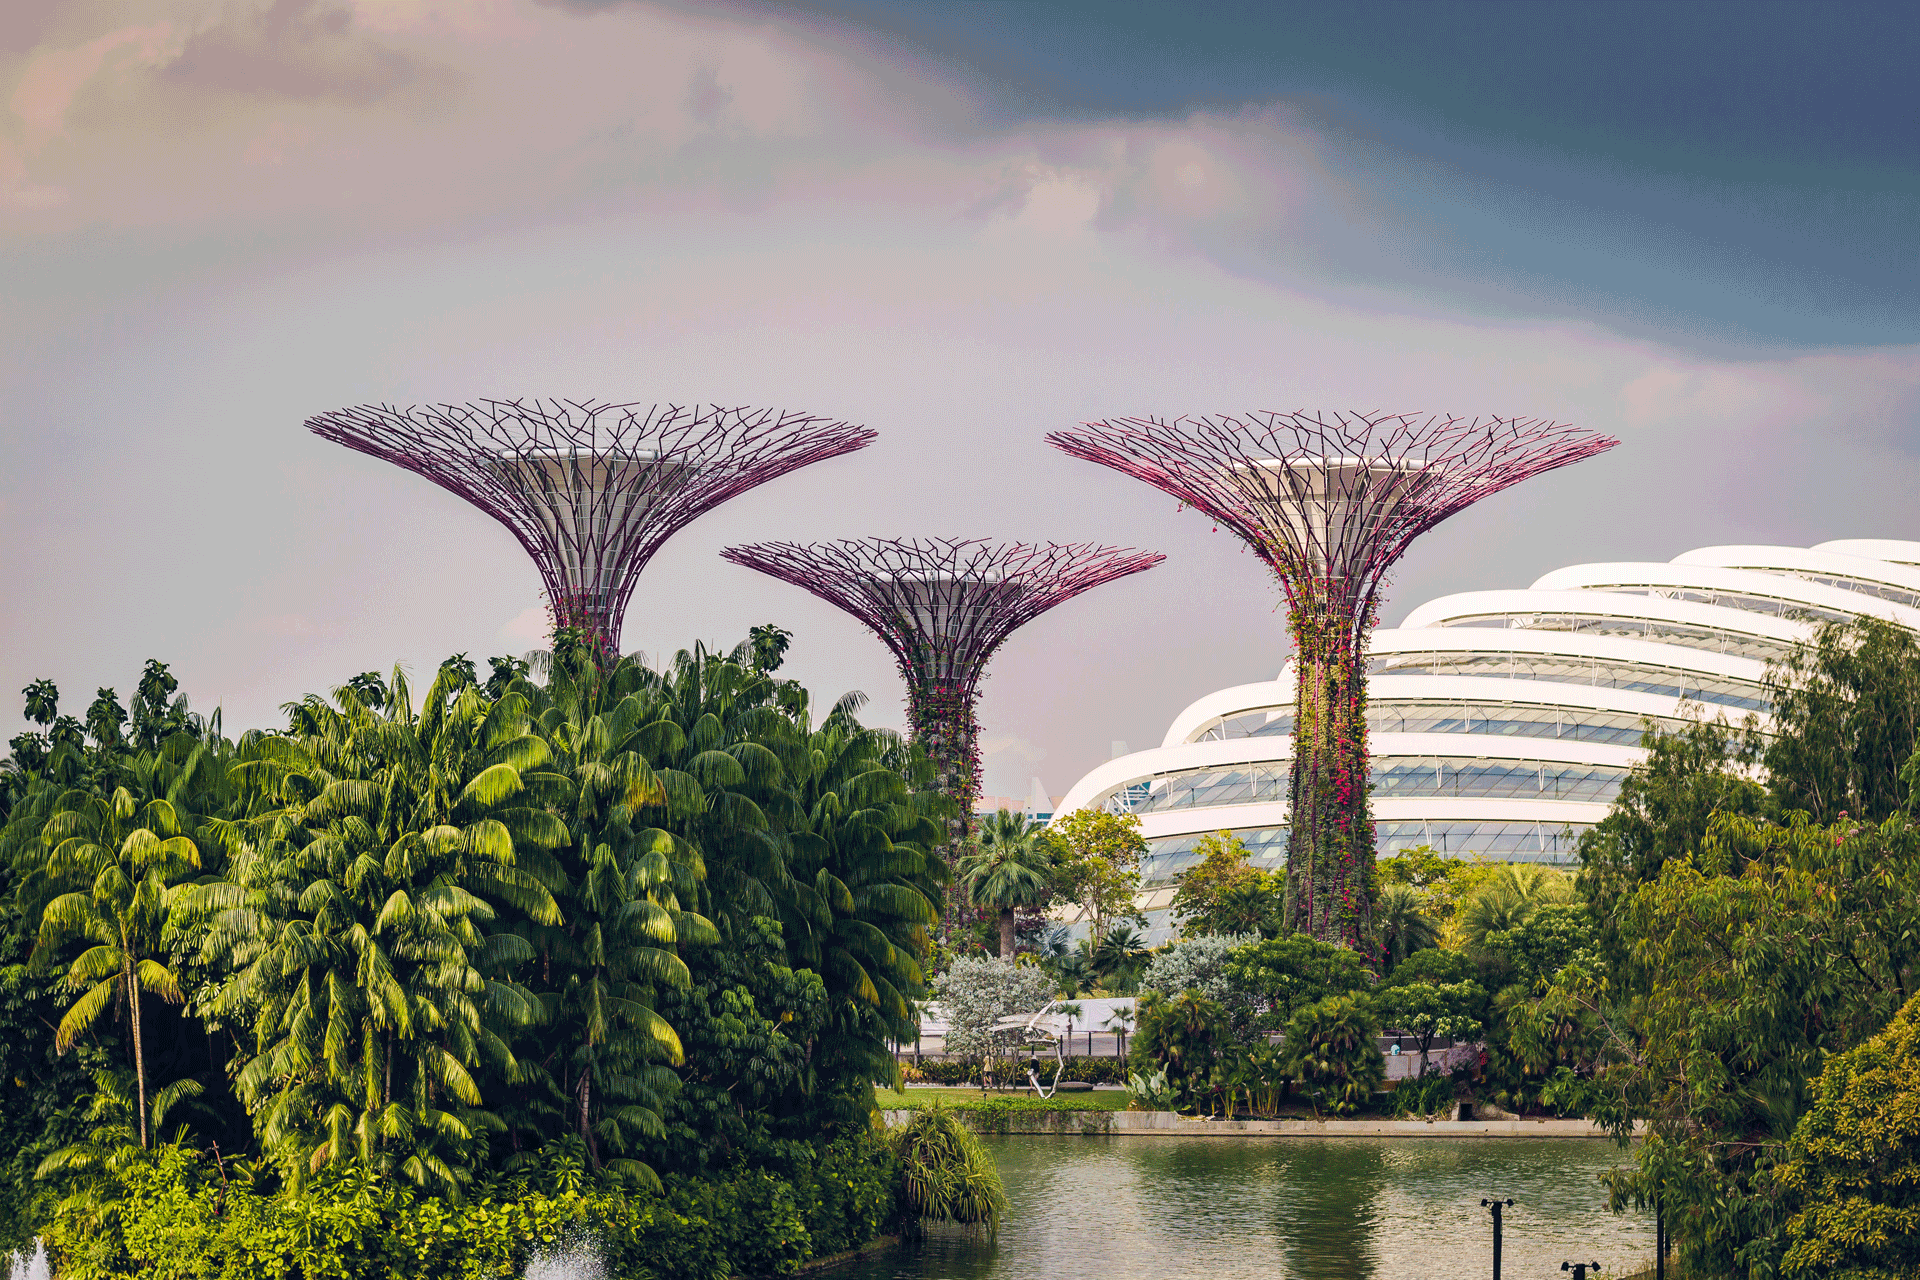 Urban greenery in Singapore.